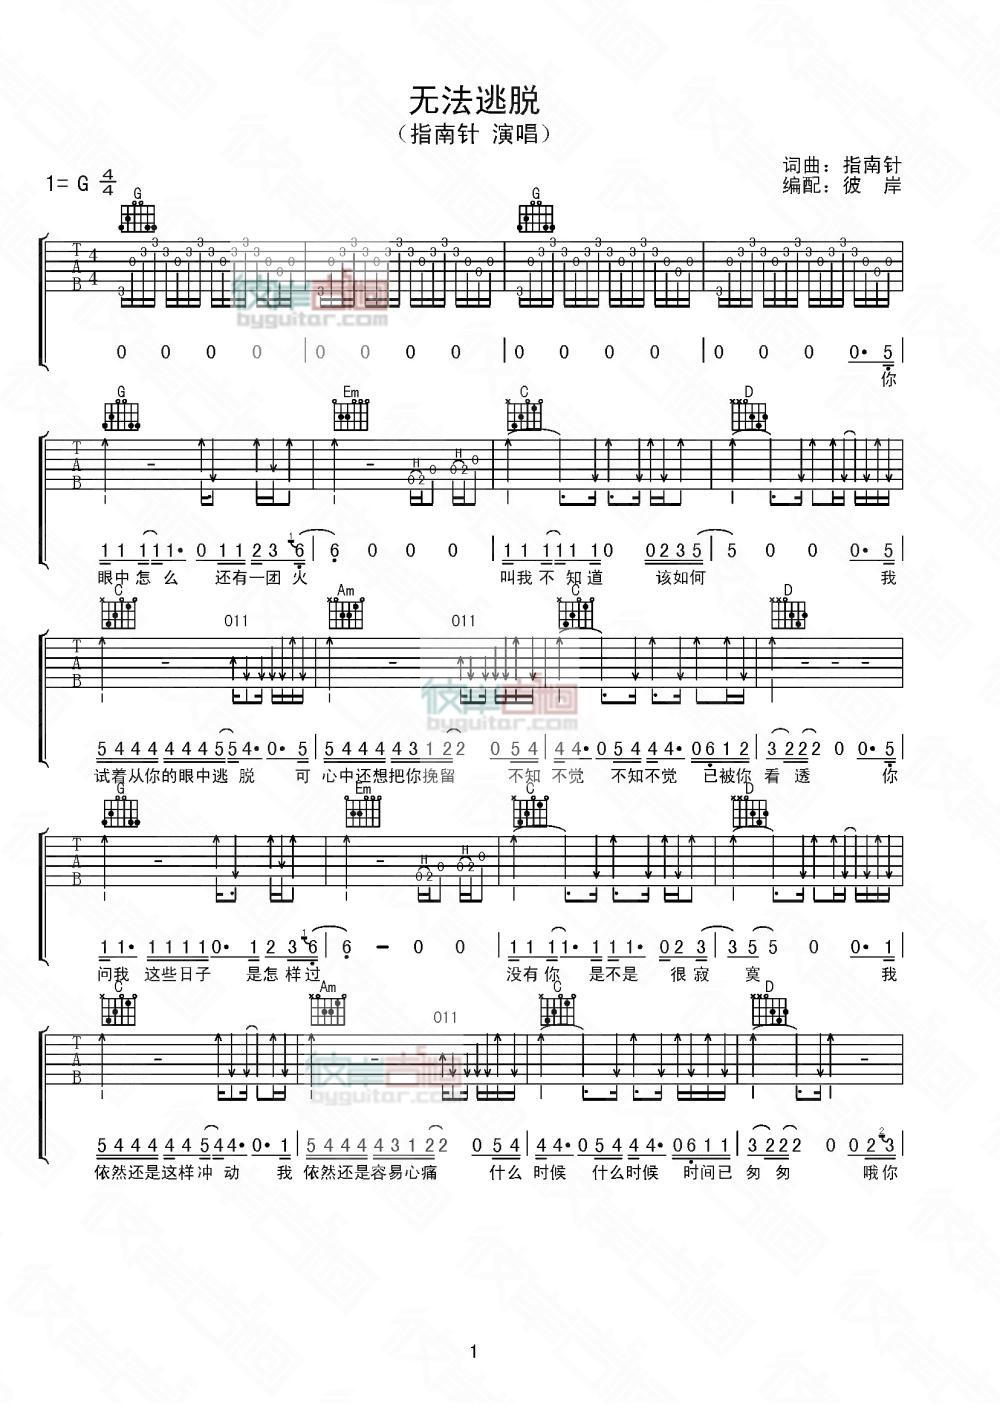 指南针乐队《无法逃脱》吉他谱-Guitar Music Score